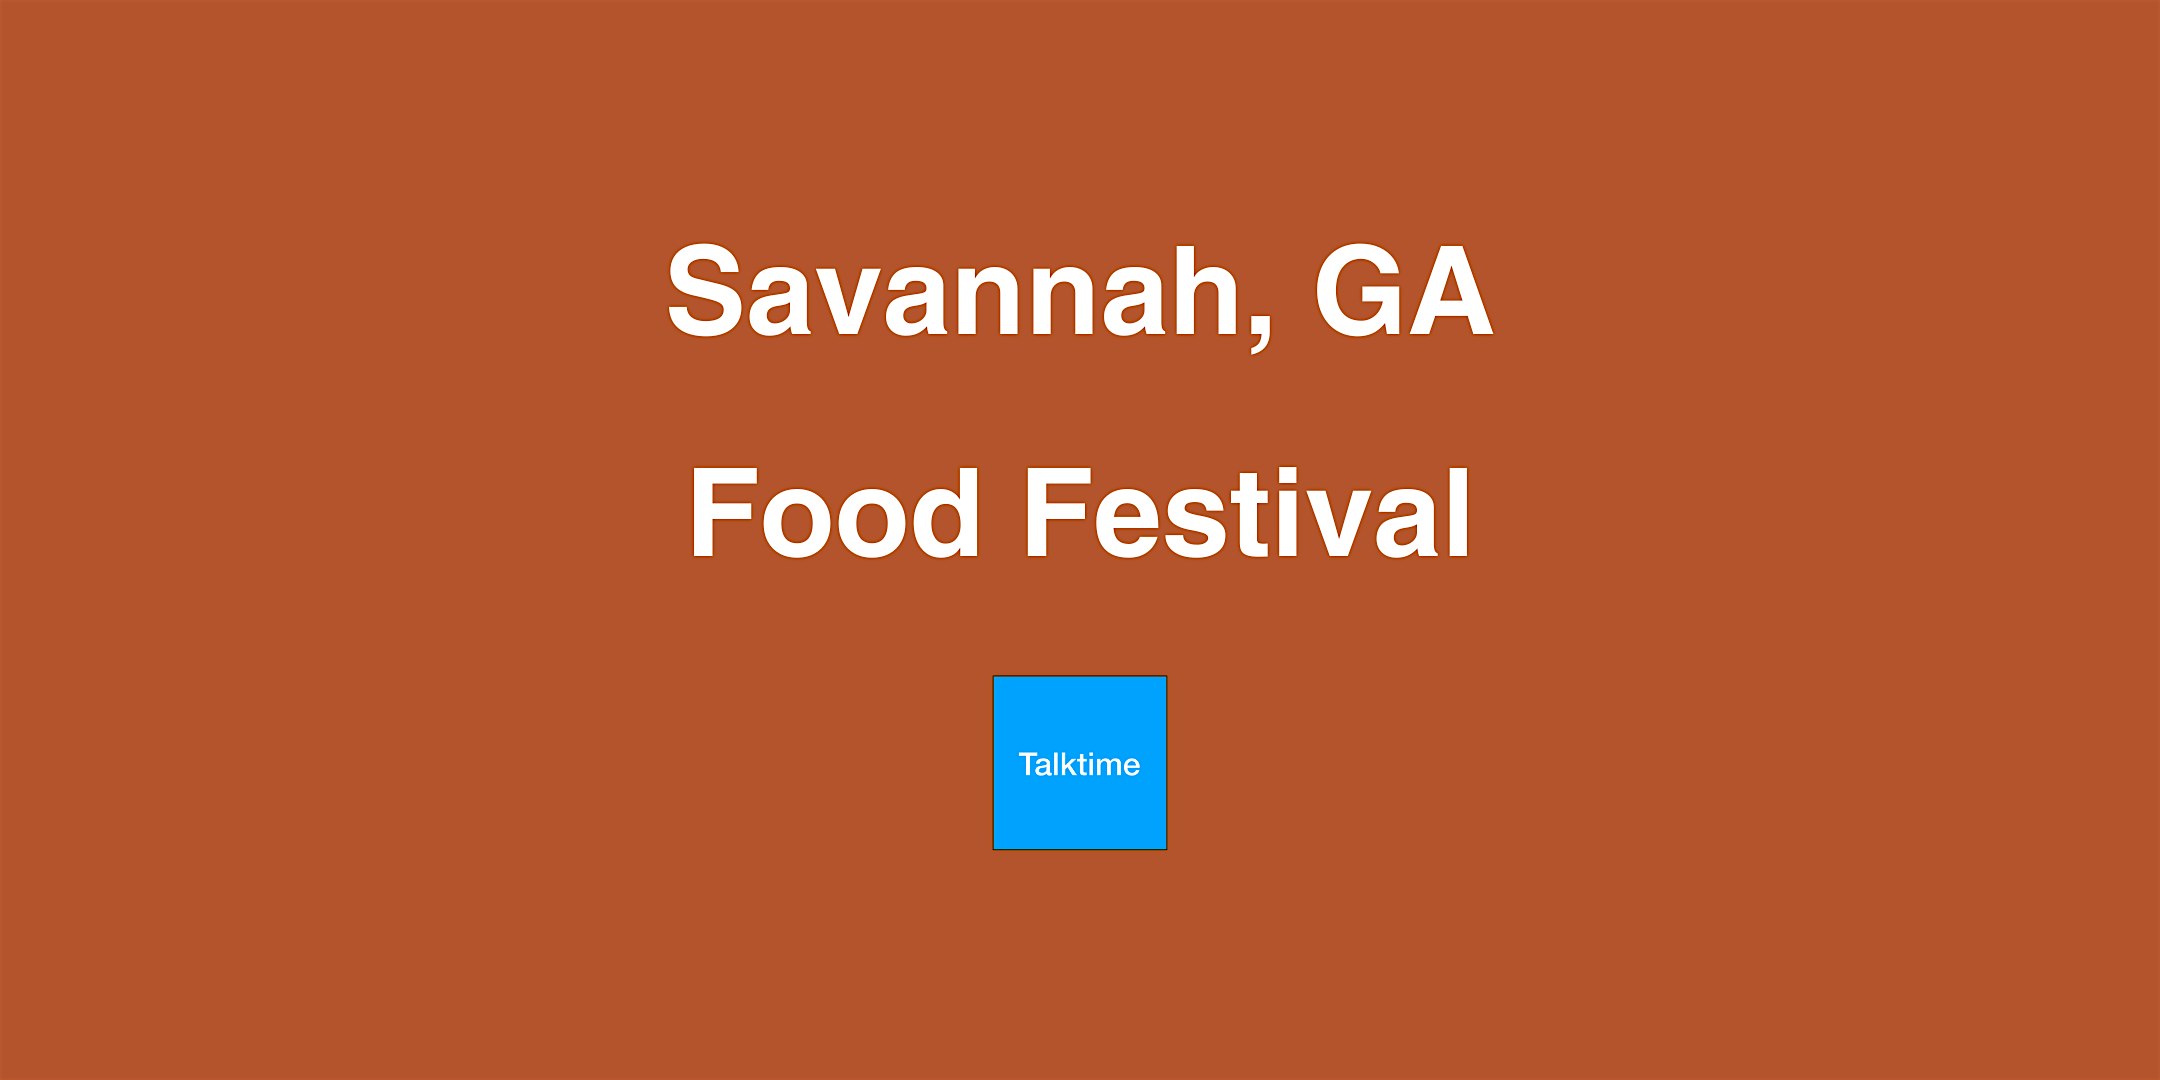 Food Festival - Savannah